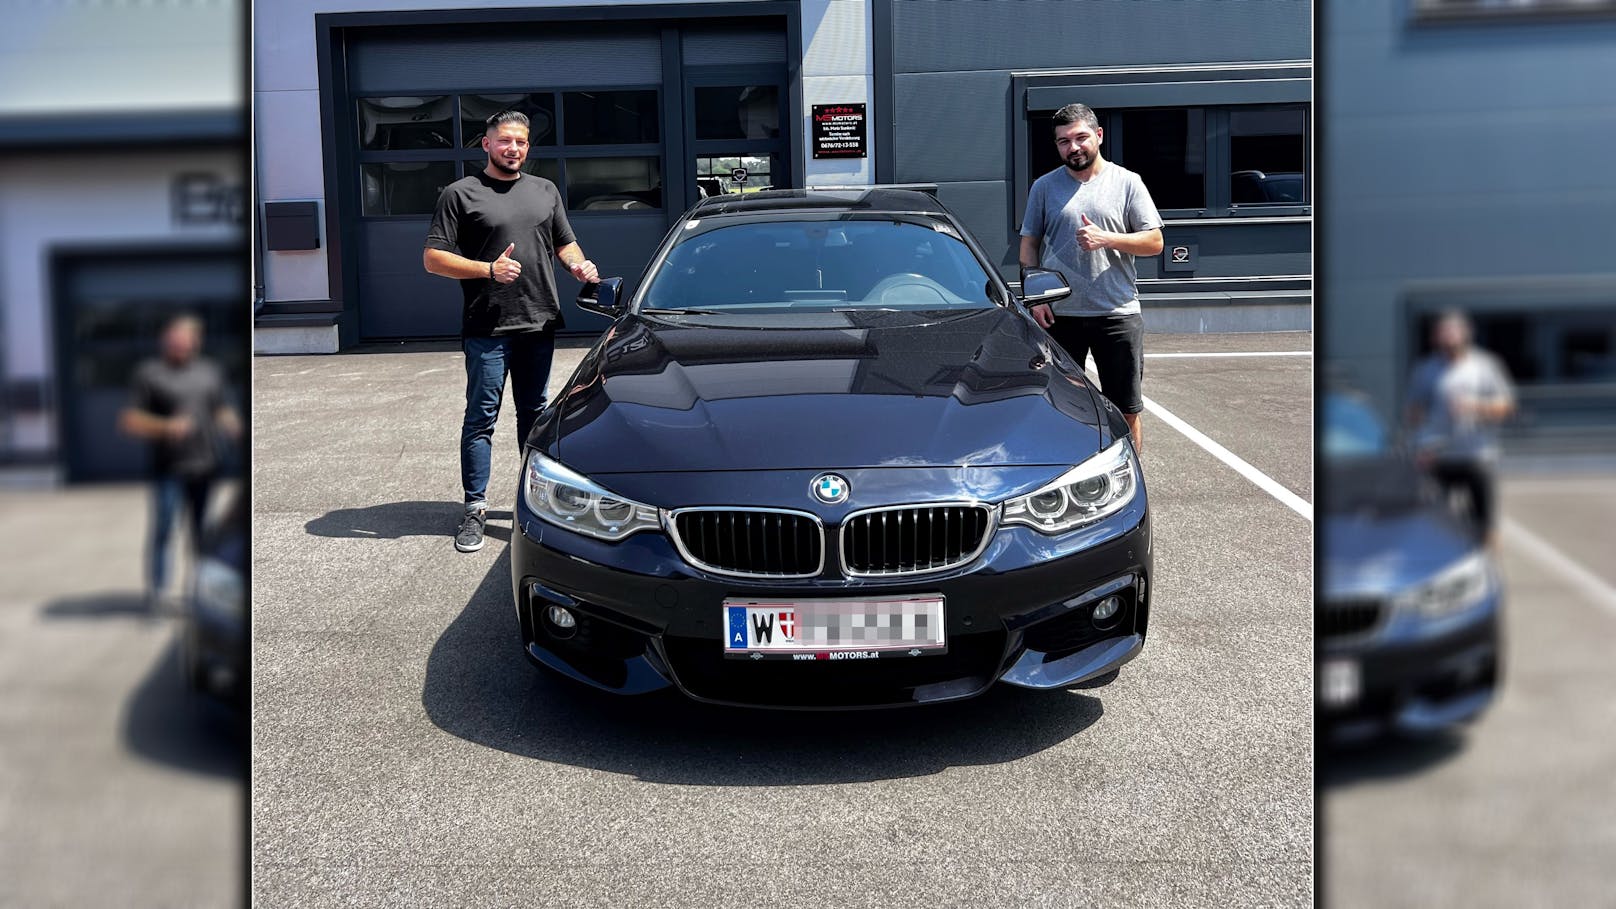 Erkan kaufte sich dann schließlich einen neuen BMW.